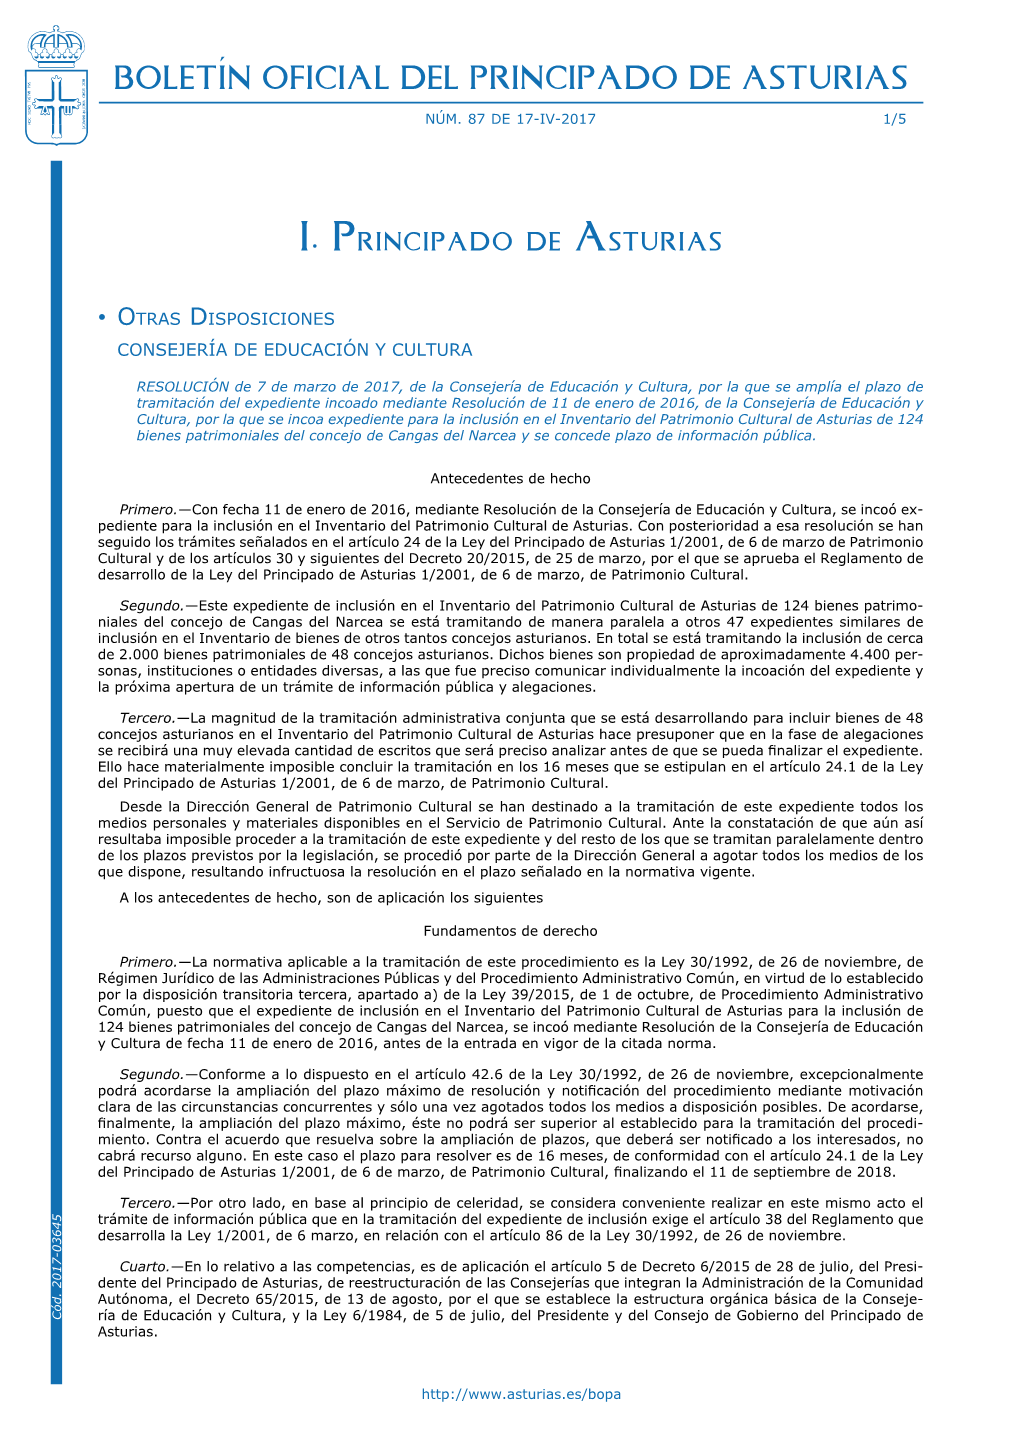 PDF De La Disposición